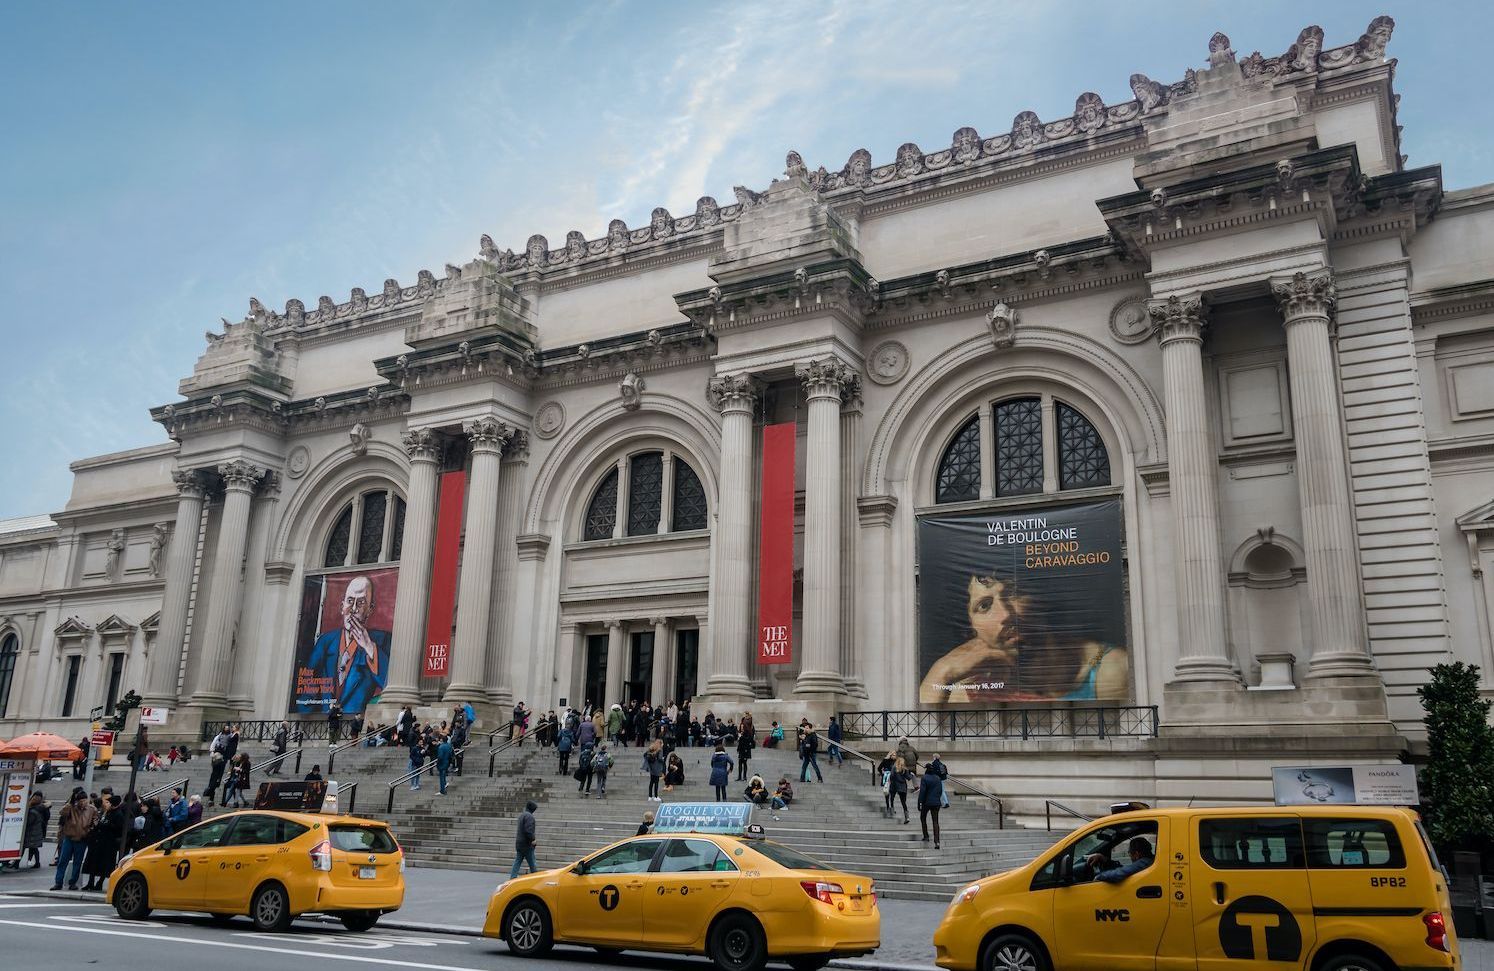 Le musée Metropolitan Museum of Art de New York va rendre 550 000 dollars reçus sous forme de don de la part de l'échange crypto FTX